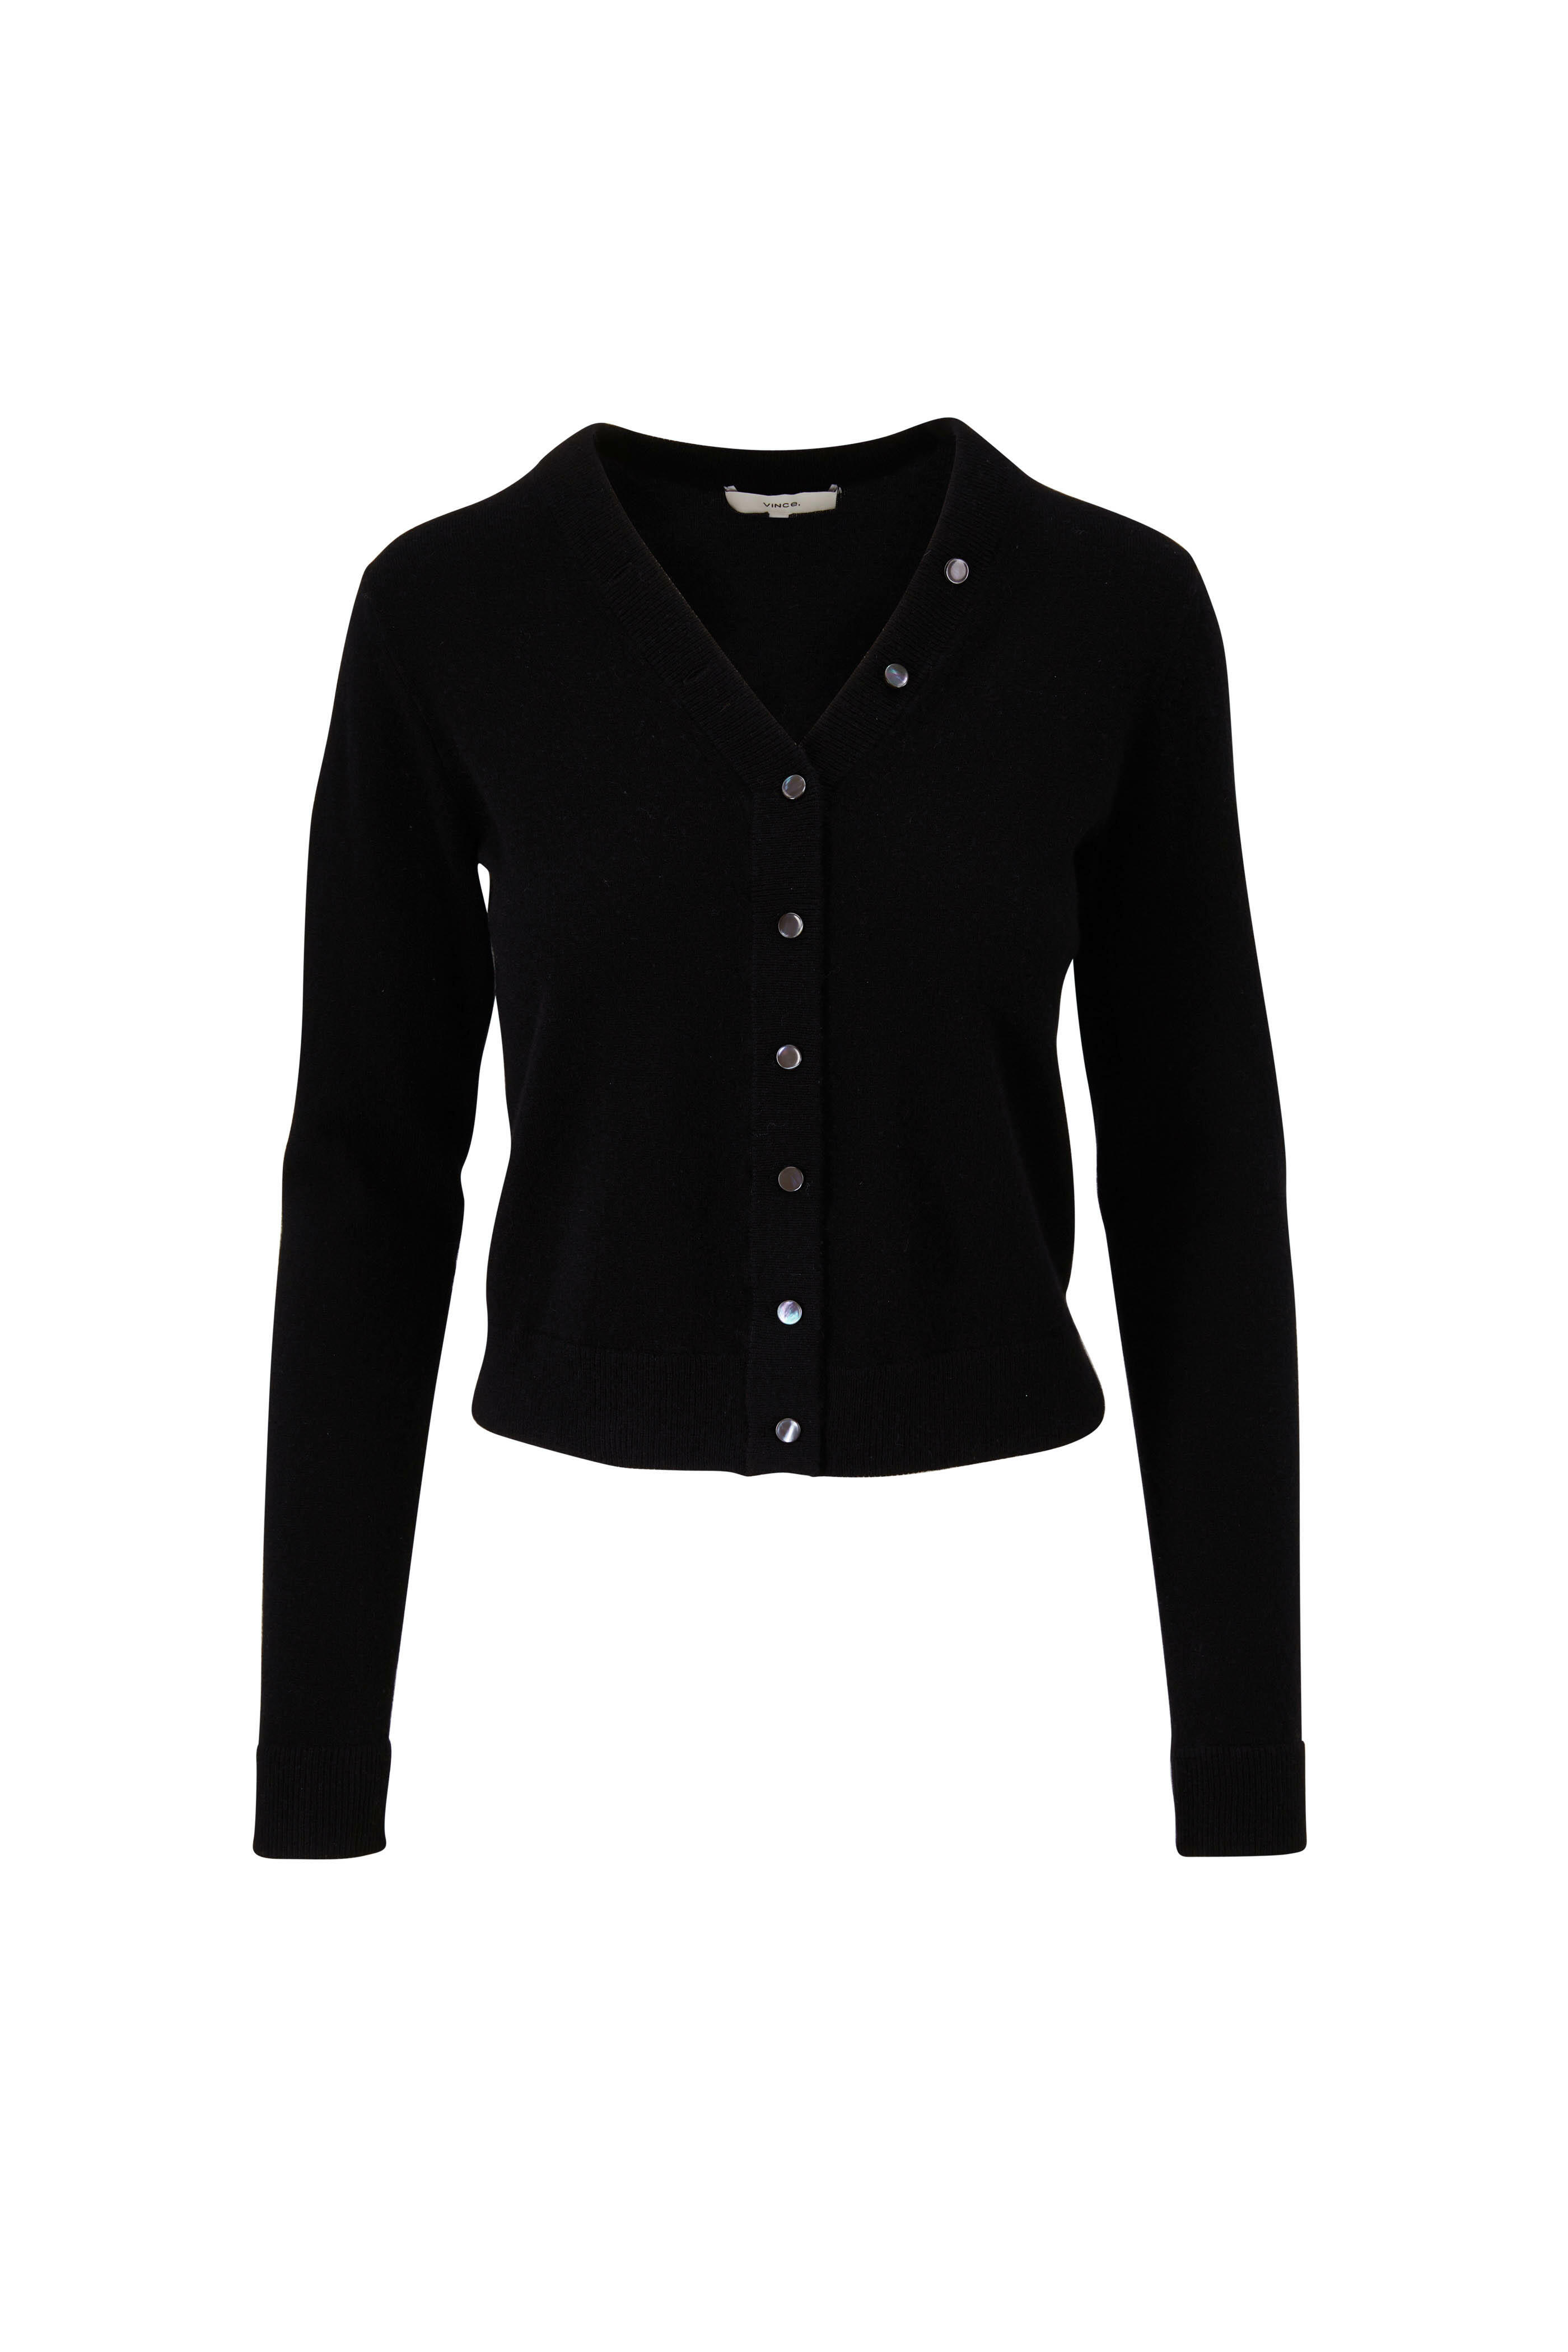 Louis Vuitton // Black Cashmere Button Cardigan – VSP Consignment